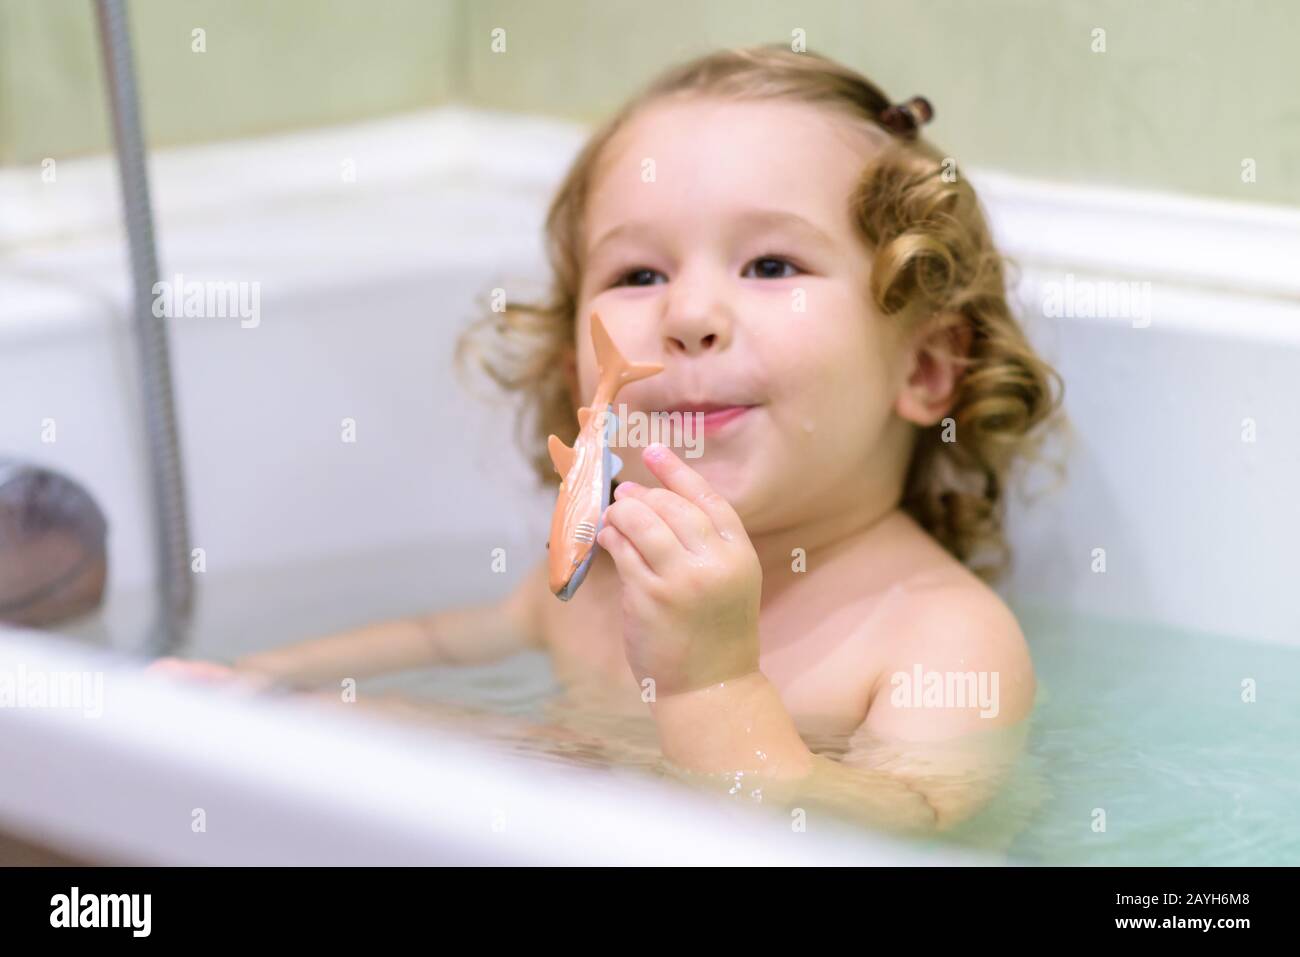 Fröhliches Baby-Mädchen spielt in einem Bad. Das zweijährige Kind hält einen Spielzeugfisch und lächelt in einer Badewanne. Adliger Kleinkind beim Baden im Bad. Waschen Stockfoto